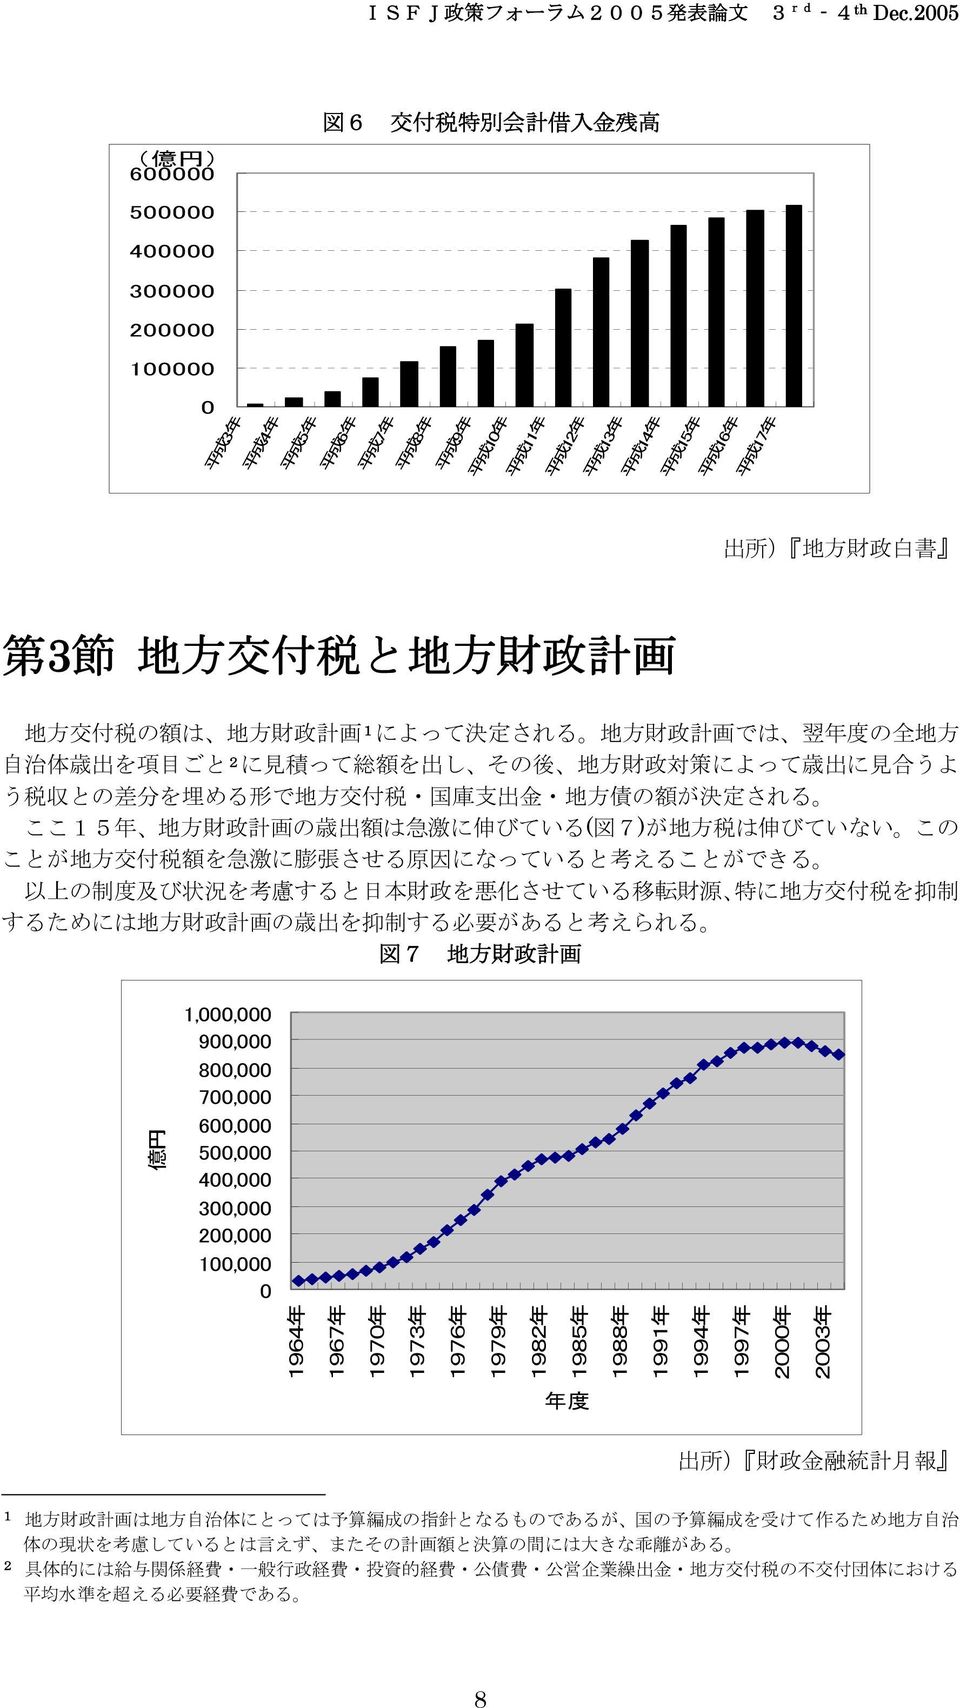 地 方 債 の 額 が 決 定 される ここ5 年 地 方 財 政 計 画 の 歳 出 額 は 急 激 に 伸 びている( 図 7)が 地 方 税 は 伸 びていない この ことが 地 方 交 付 税 額 を 急 激 に 膨 張 させる 原 因 になっていると 考 えることができる 以 上 の 制 度 及 び 状 況 を 考 慮 すると 日 本 財 政 を 悪 化 させている 移 転 財 源 特